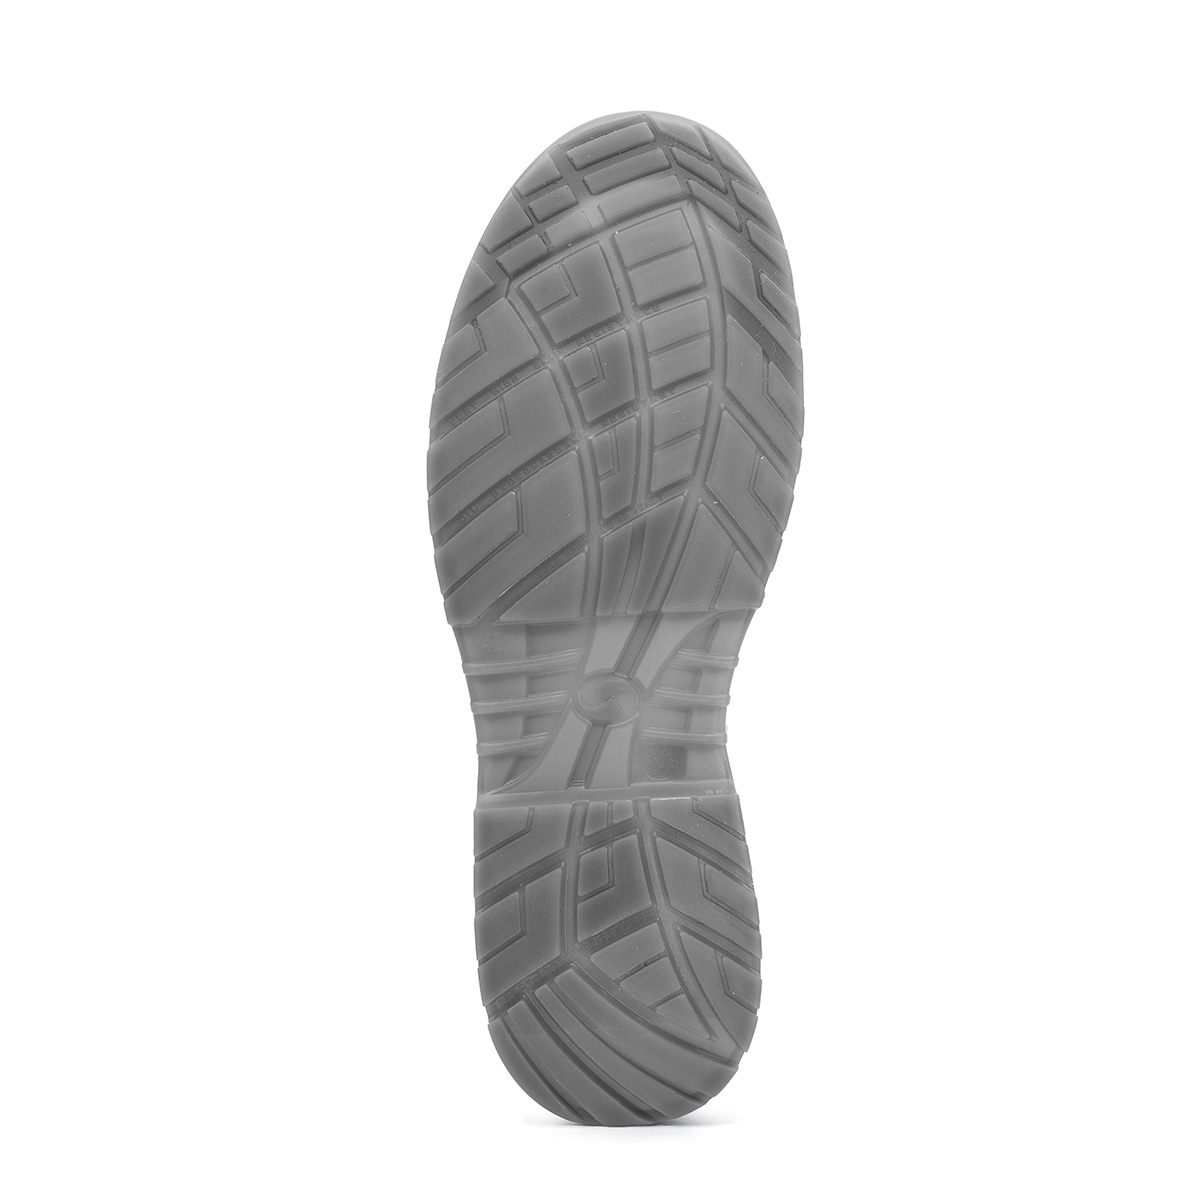 Crystal BERGAMO Ankle Shoes - classe modello SRC - Safety di Peak con Codice Sixton protezione boot 86206-00 S2